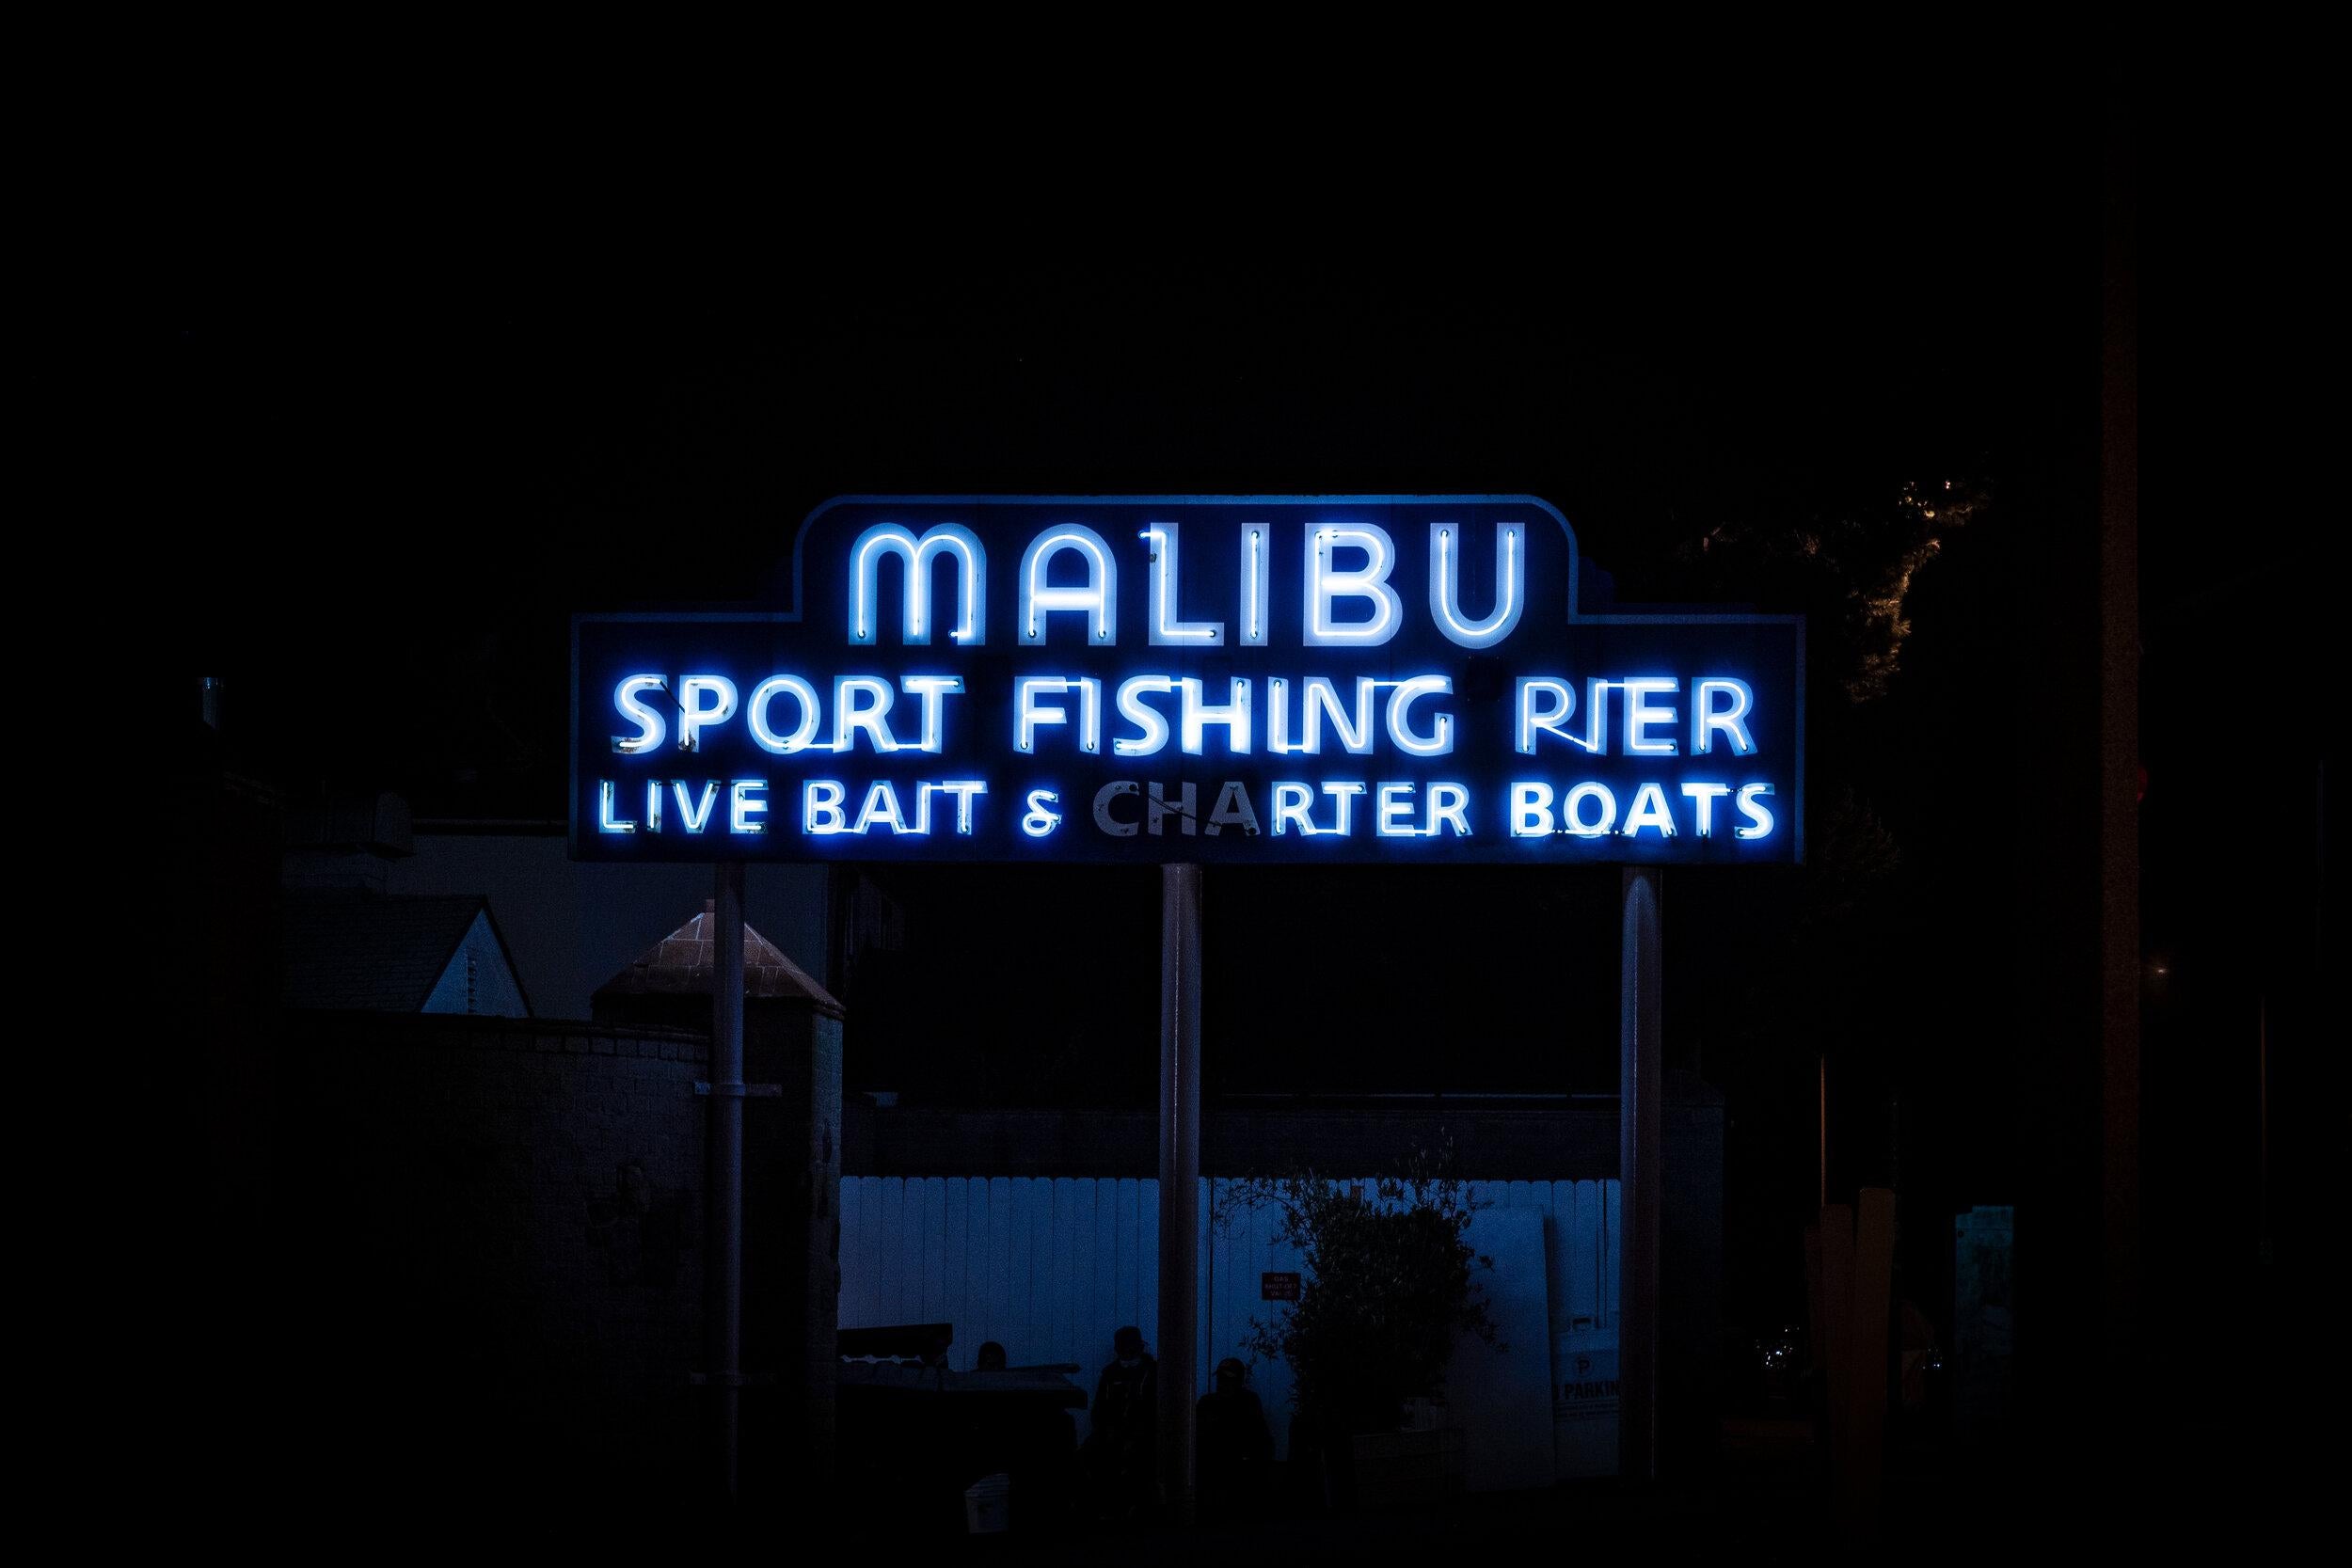 „Malibu Pier“ Fotografie 30" x 40" Zoll Auflage von 5 Stück von Oleg Char

Medium: Hahnemühle Barytpapier
Nicht gerahmt. Wird in einer Tube geliefert. 

Andere Größen verfügbar: 	
Auflage von 5:	28,8" x 40" Zoll
Auflage von 20 Stück:	14,4" x 20"